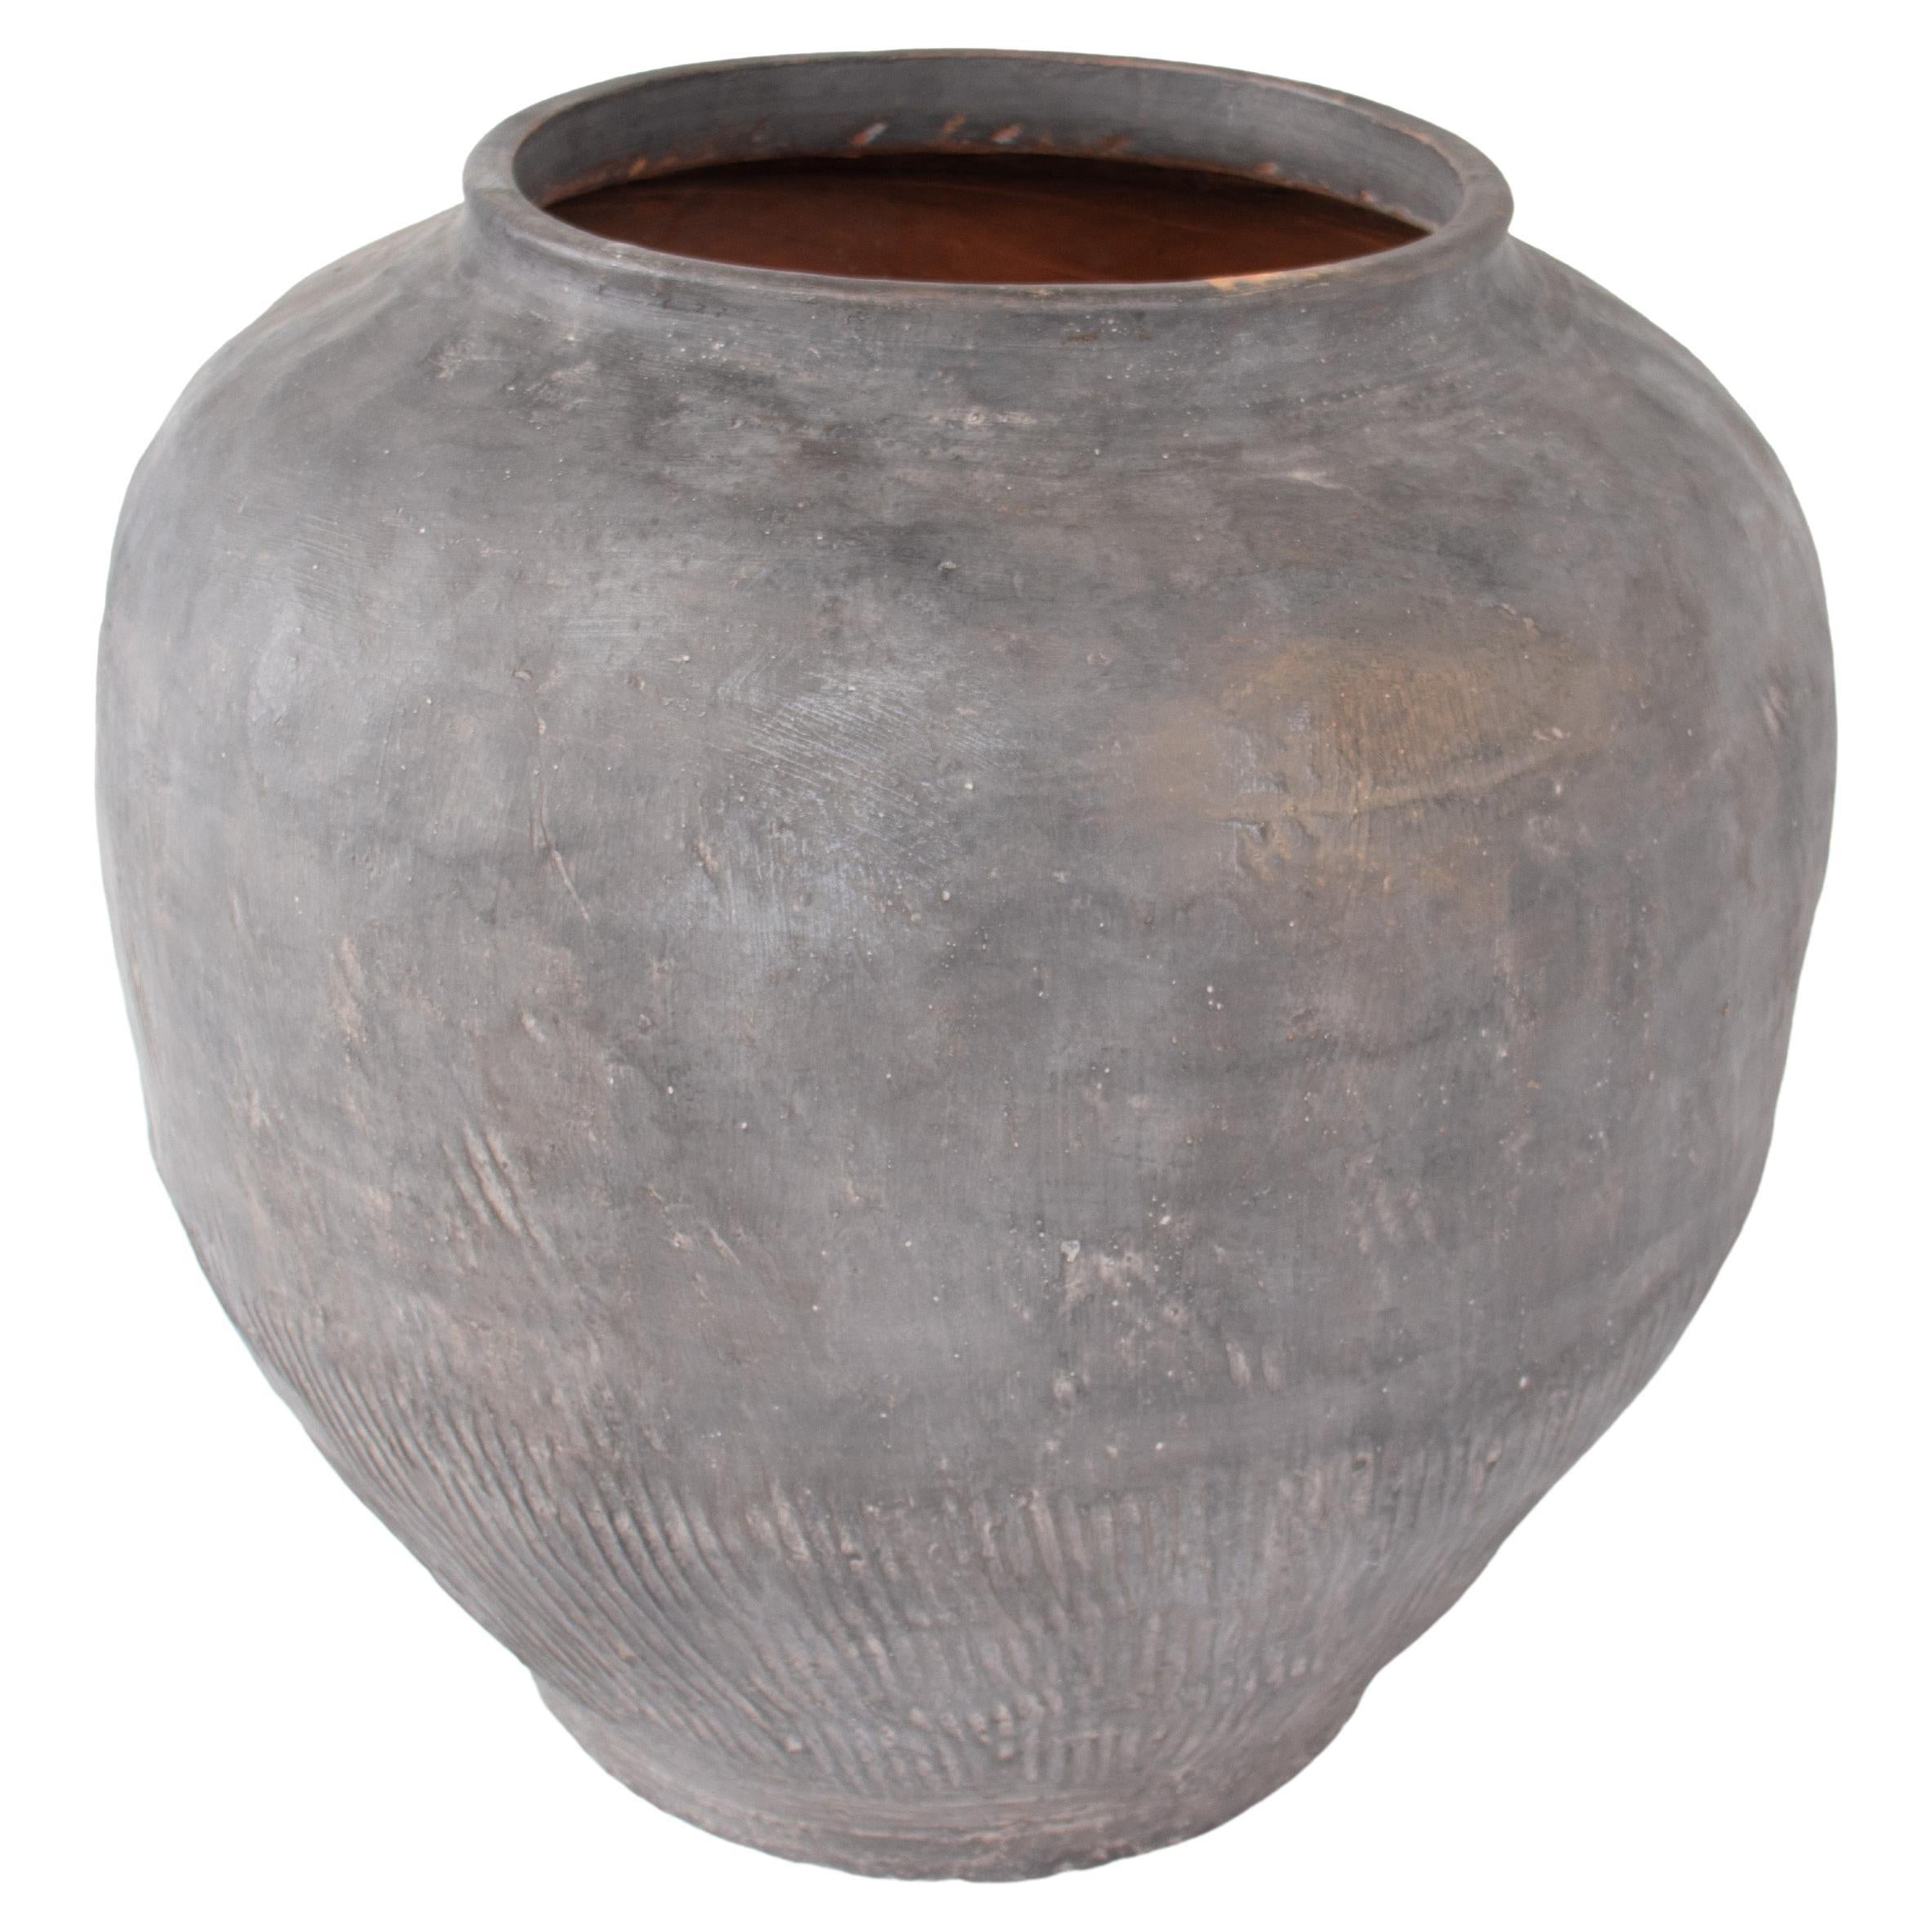 Terracotta Storage Jar